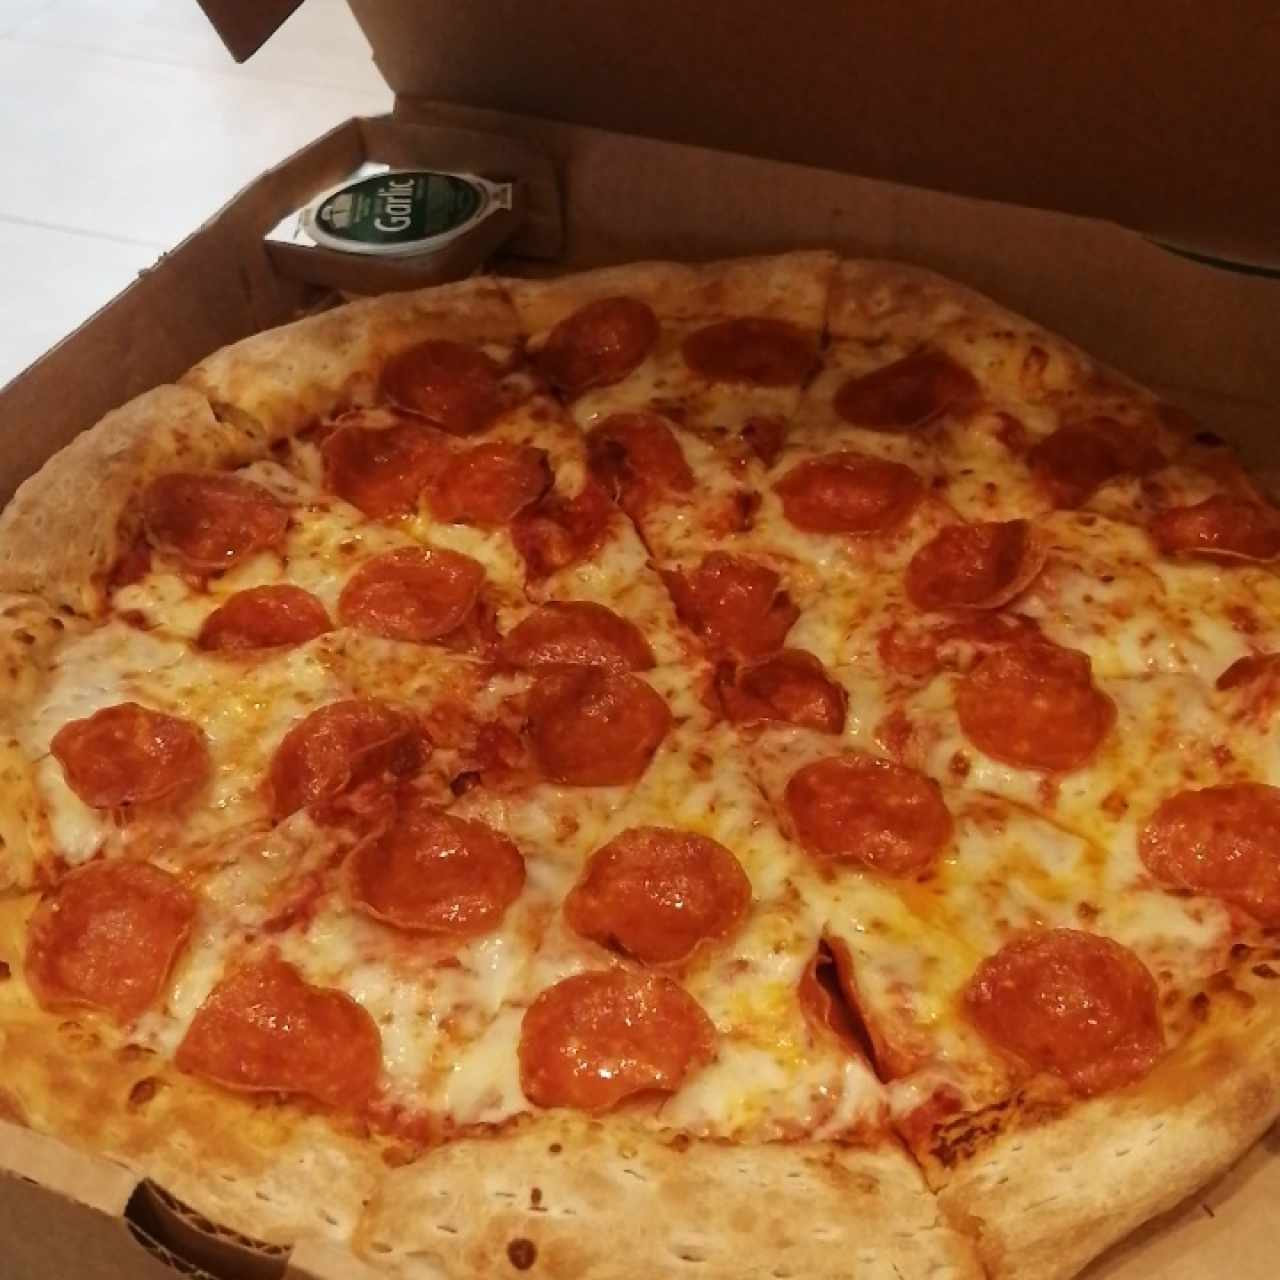 Pizzas artesanales - Pizza con pepperoni